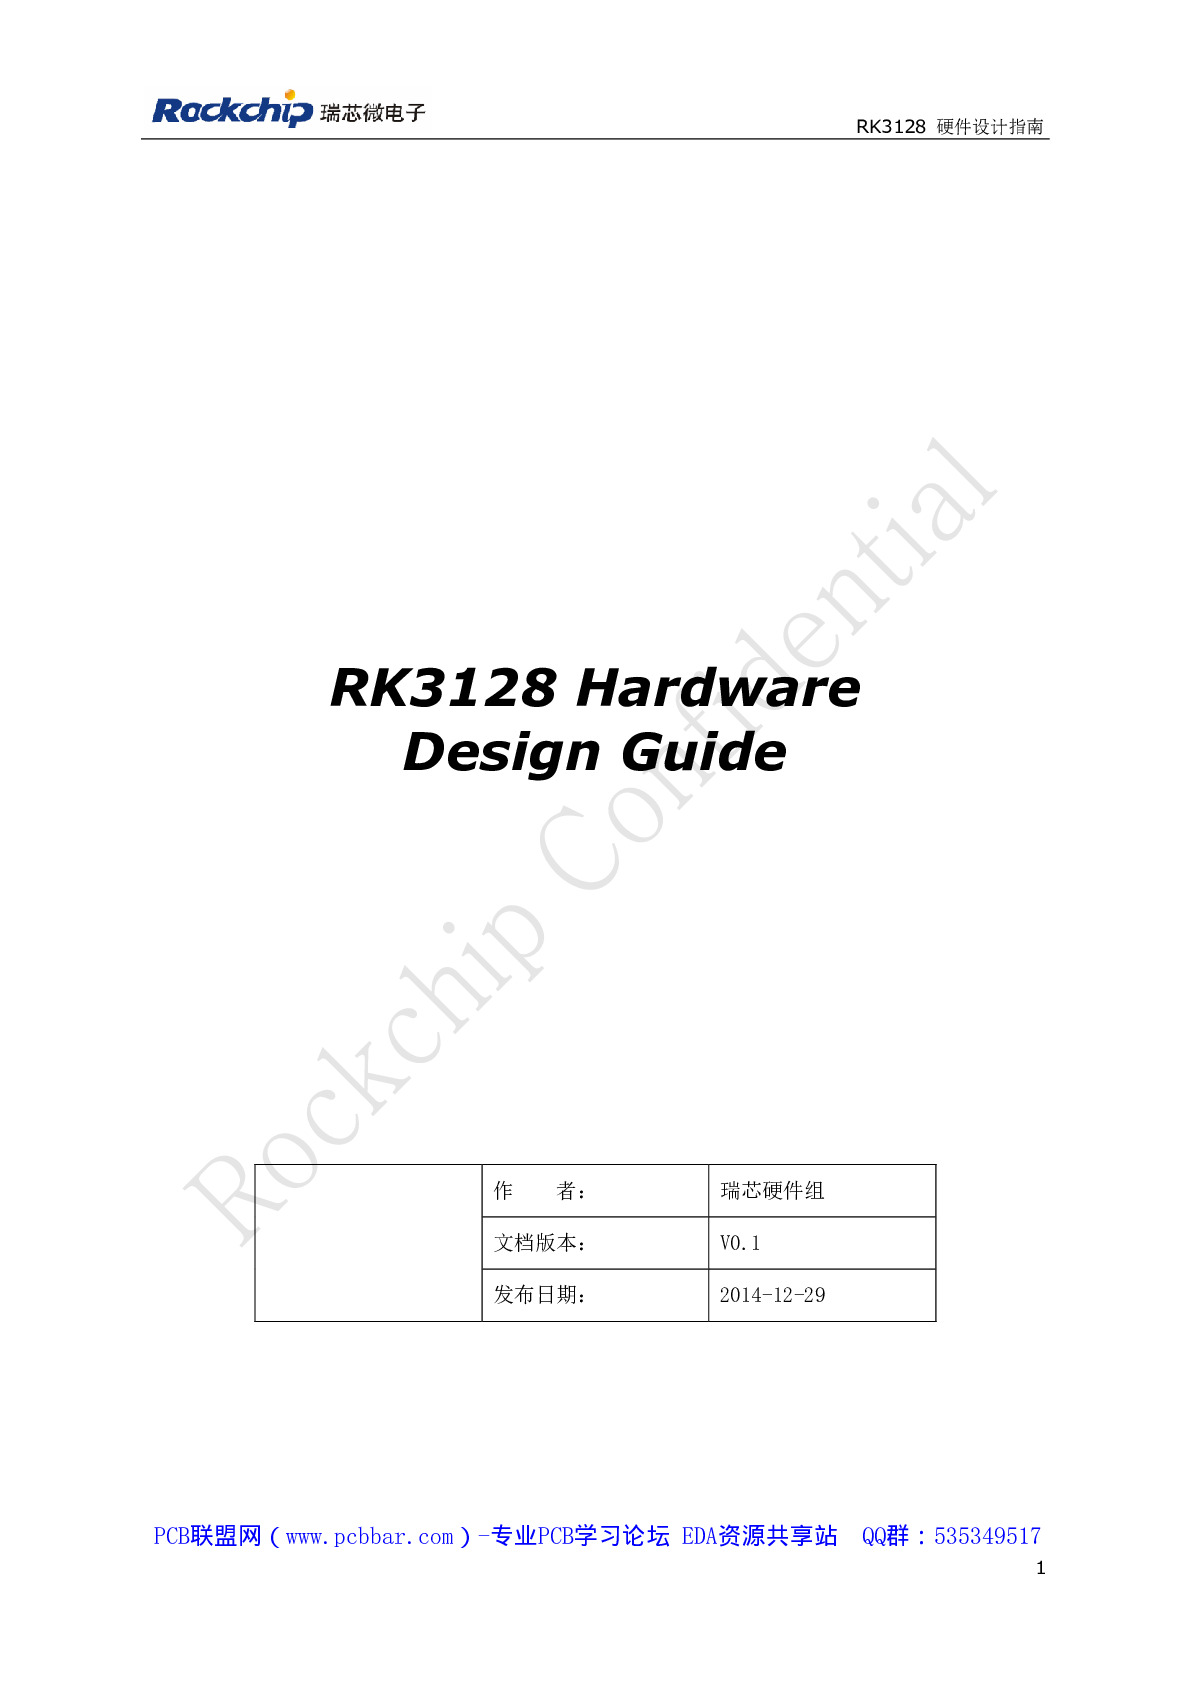 RK3128 Hardware Design Guide V0.1-瑞芯微RK3128硬件设计指南